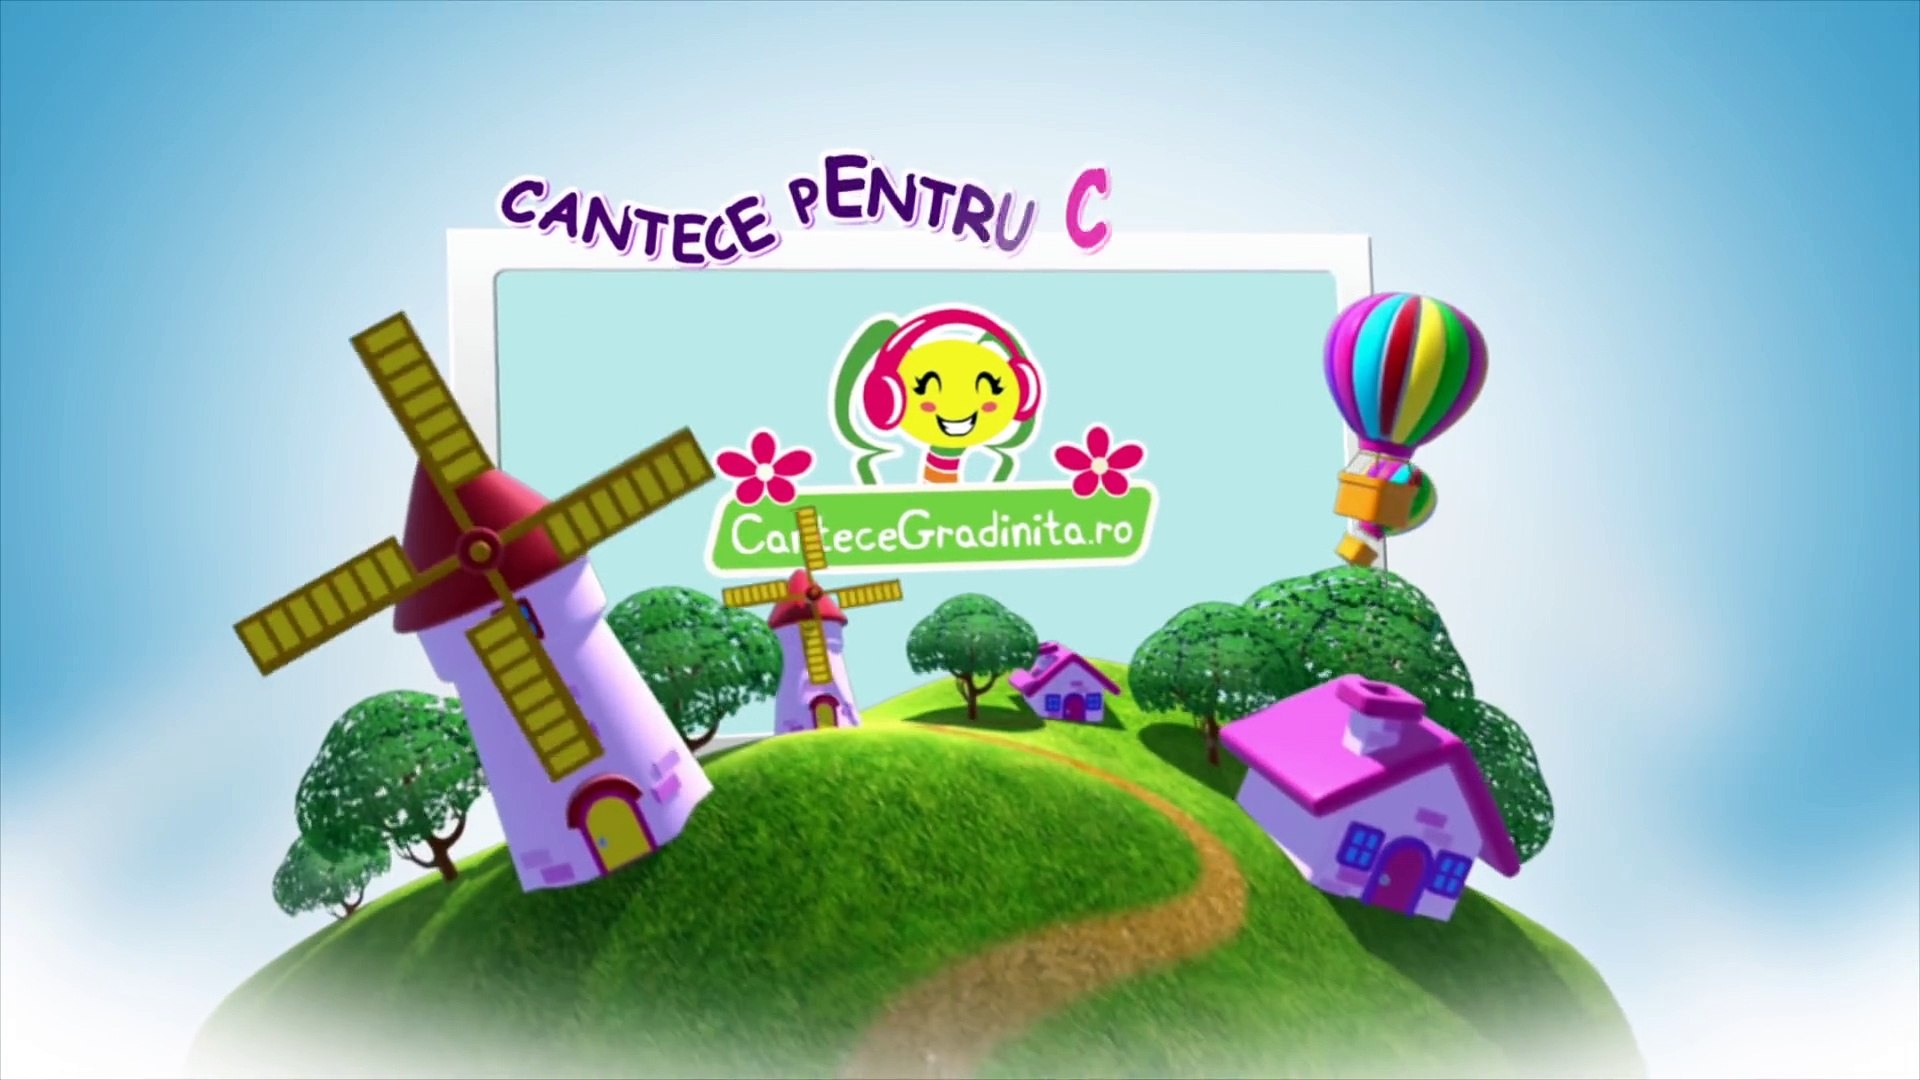 Sade Rata Pe Butoi _ CanteceGradinita.ro - cantece pentru copii - video  Dailymotion